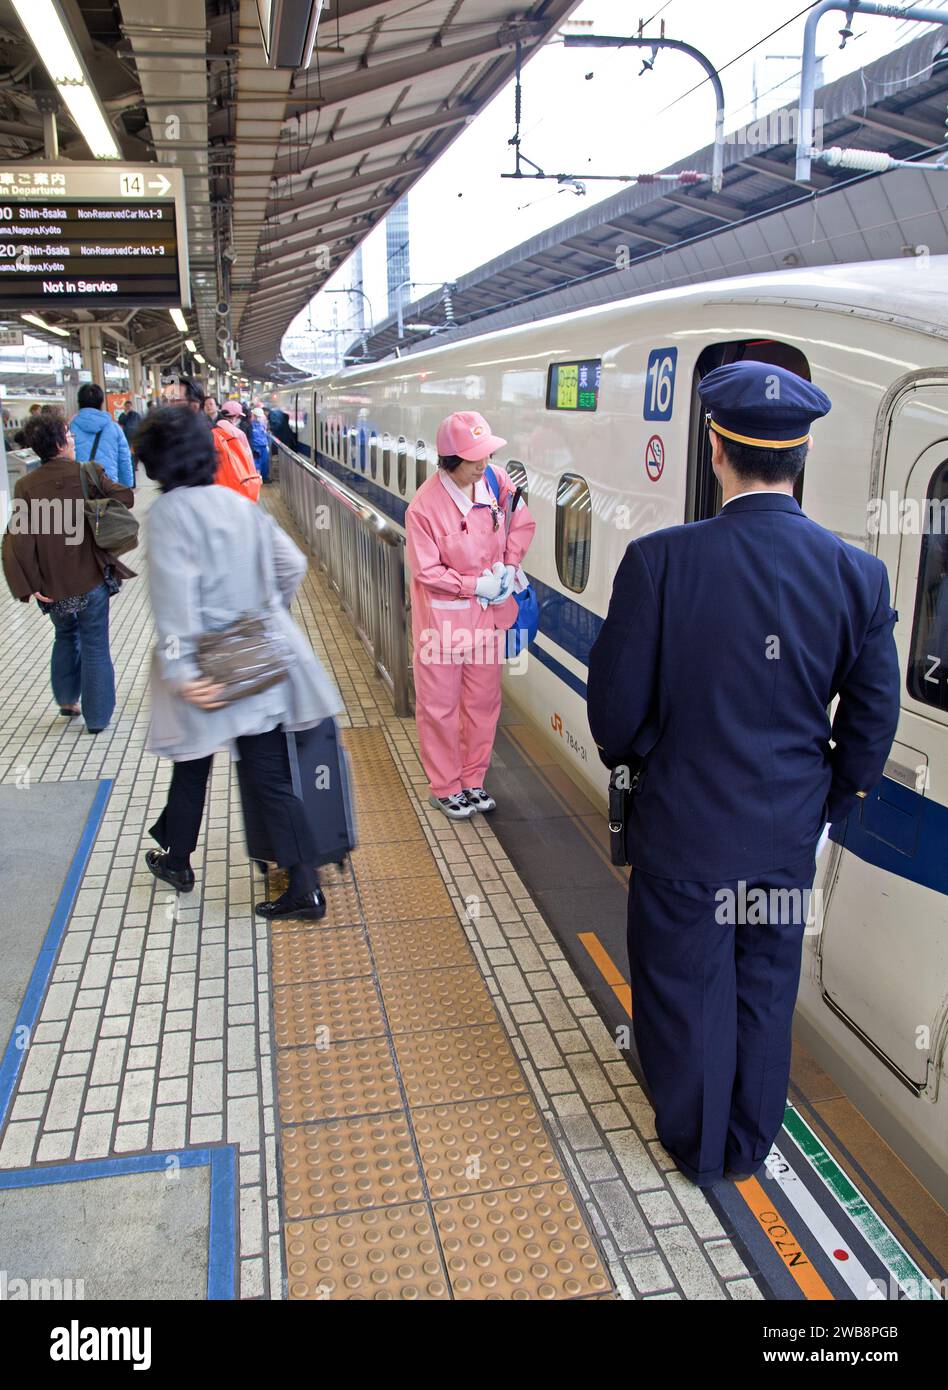 A Shinkansen N700 Series bullet train at Shinagawa station in Tokyo, Japan. Stock Photo